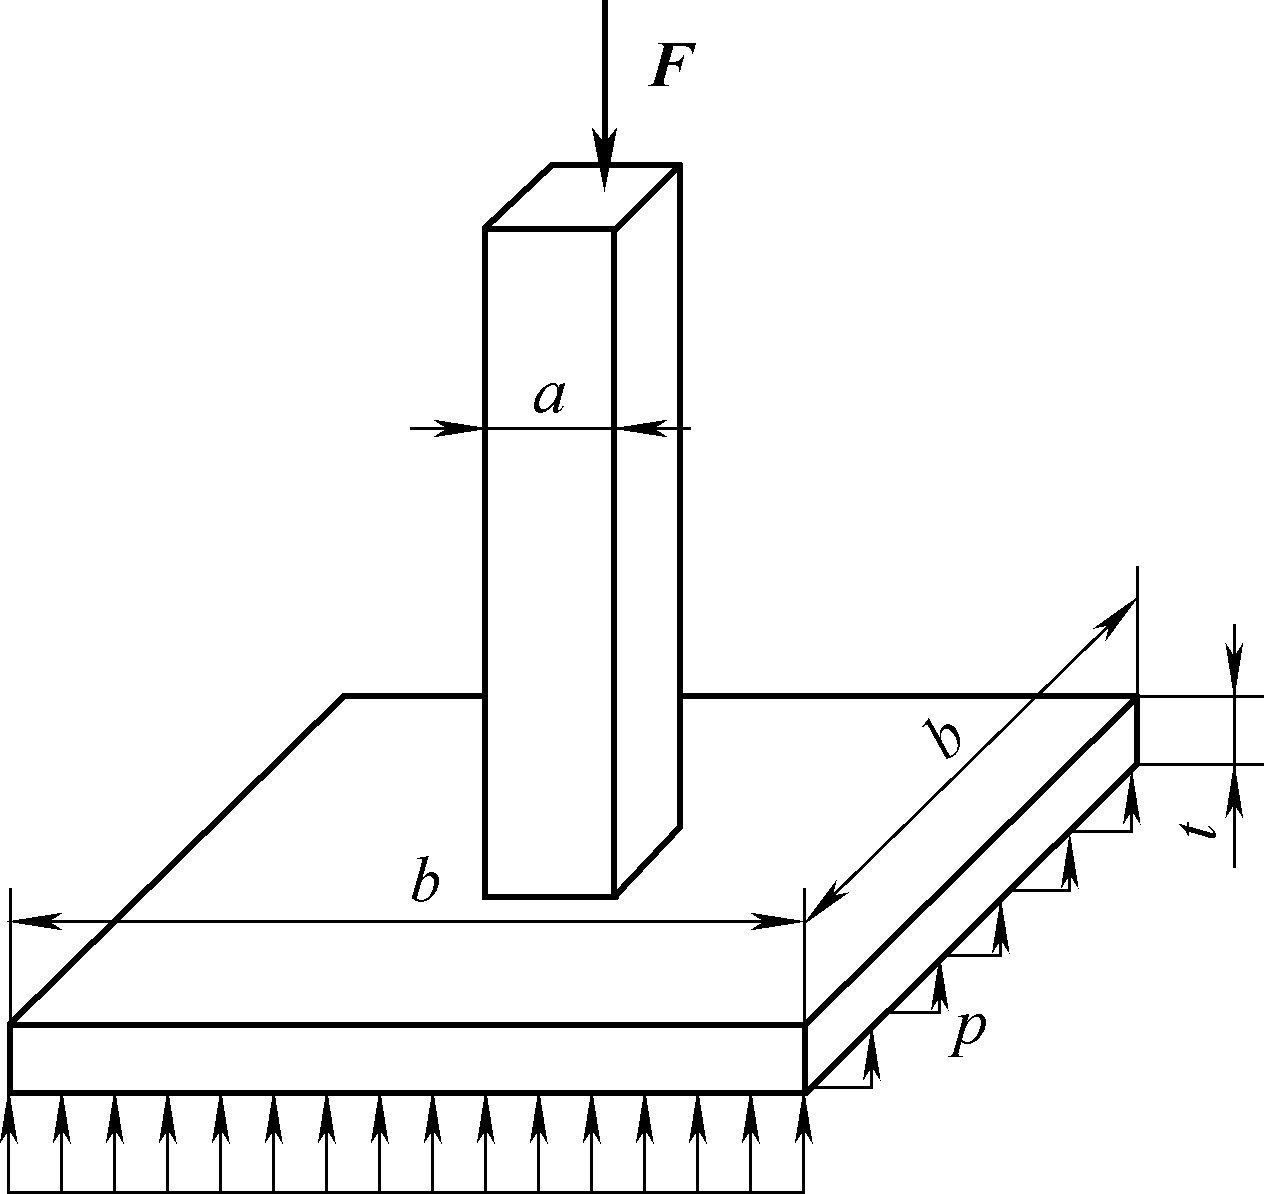 正方形截面的混凝土立柱被浇筑在正方形混凝土基板上。已知立柱横截面边长a=20cm，基板边长b=1m，